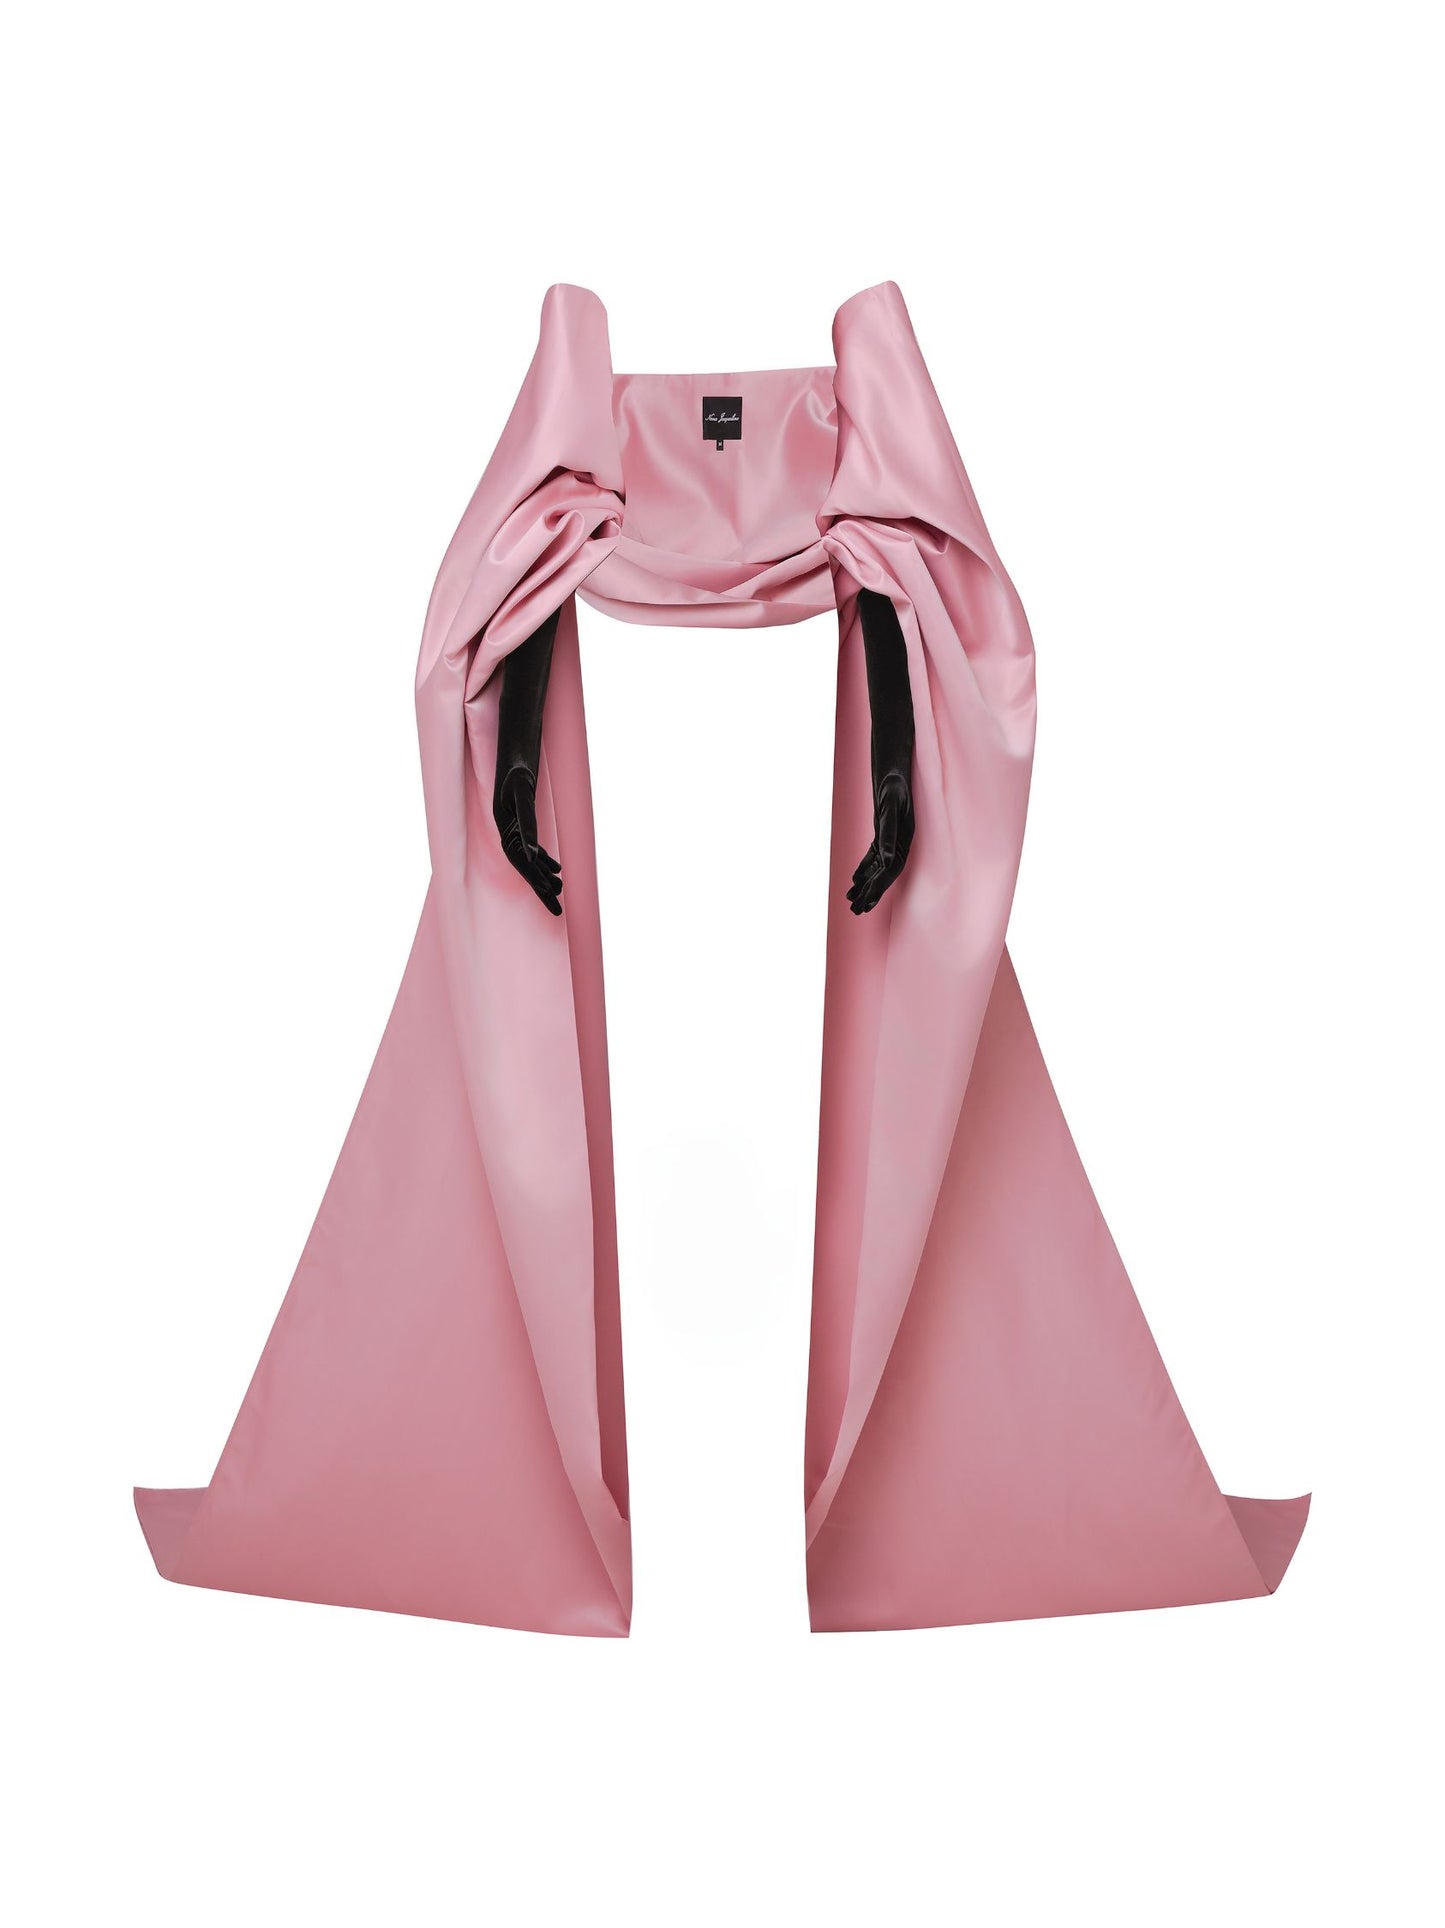 Florence Gloves + Shawl (Pink)